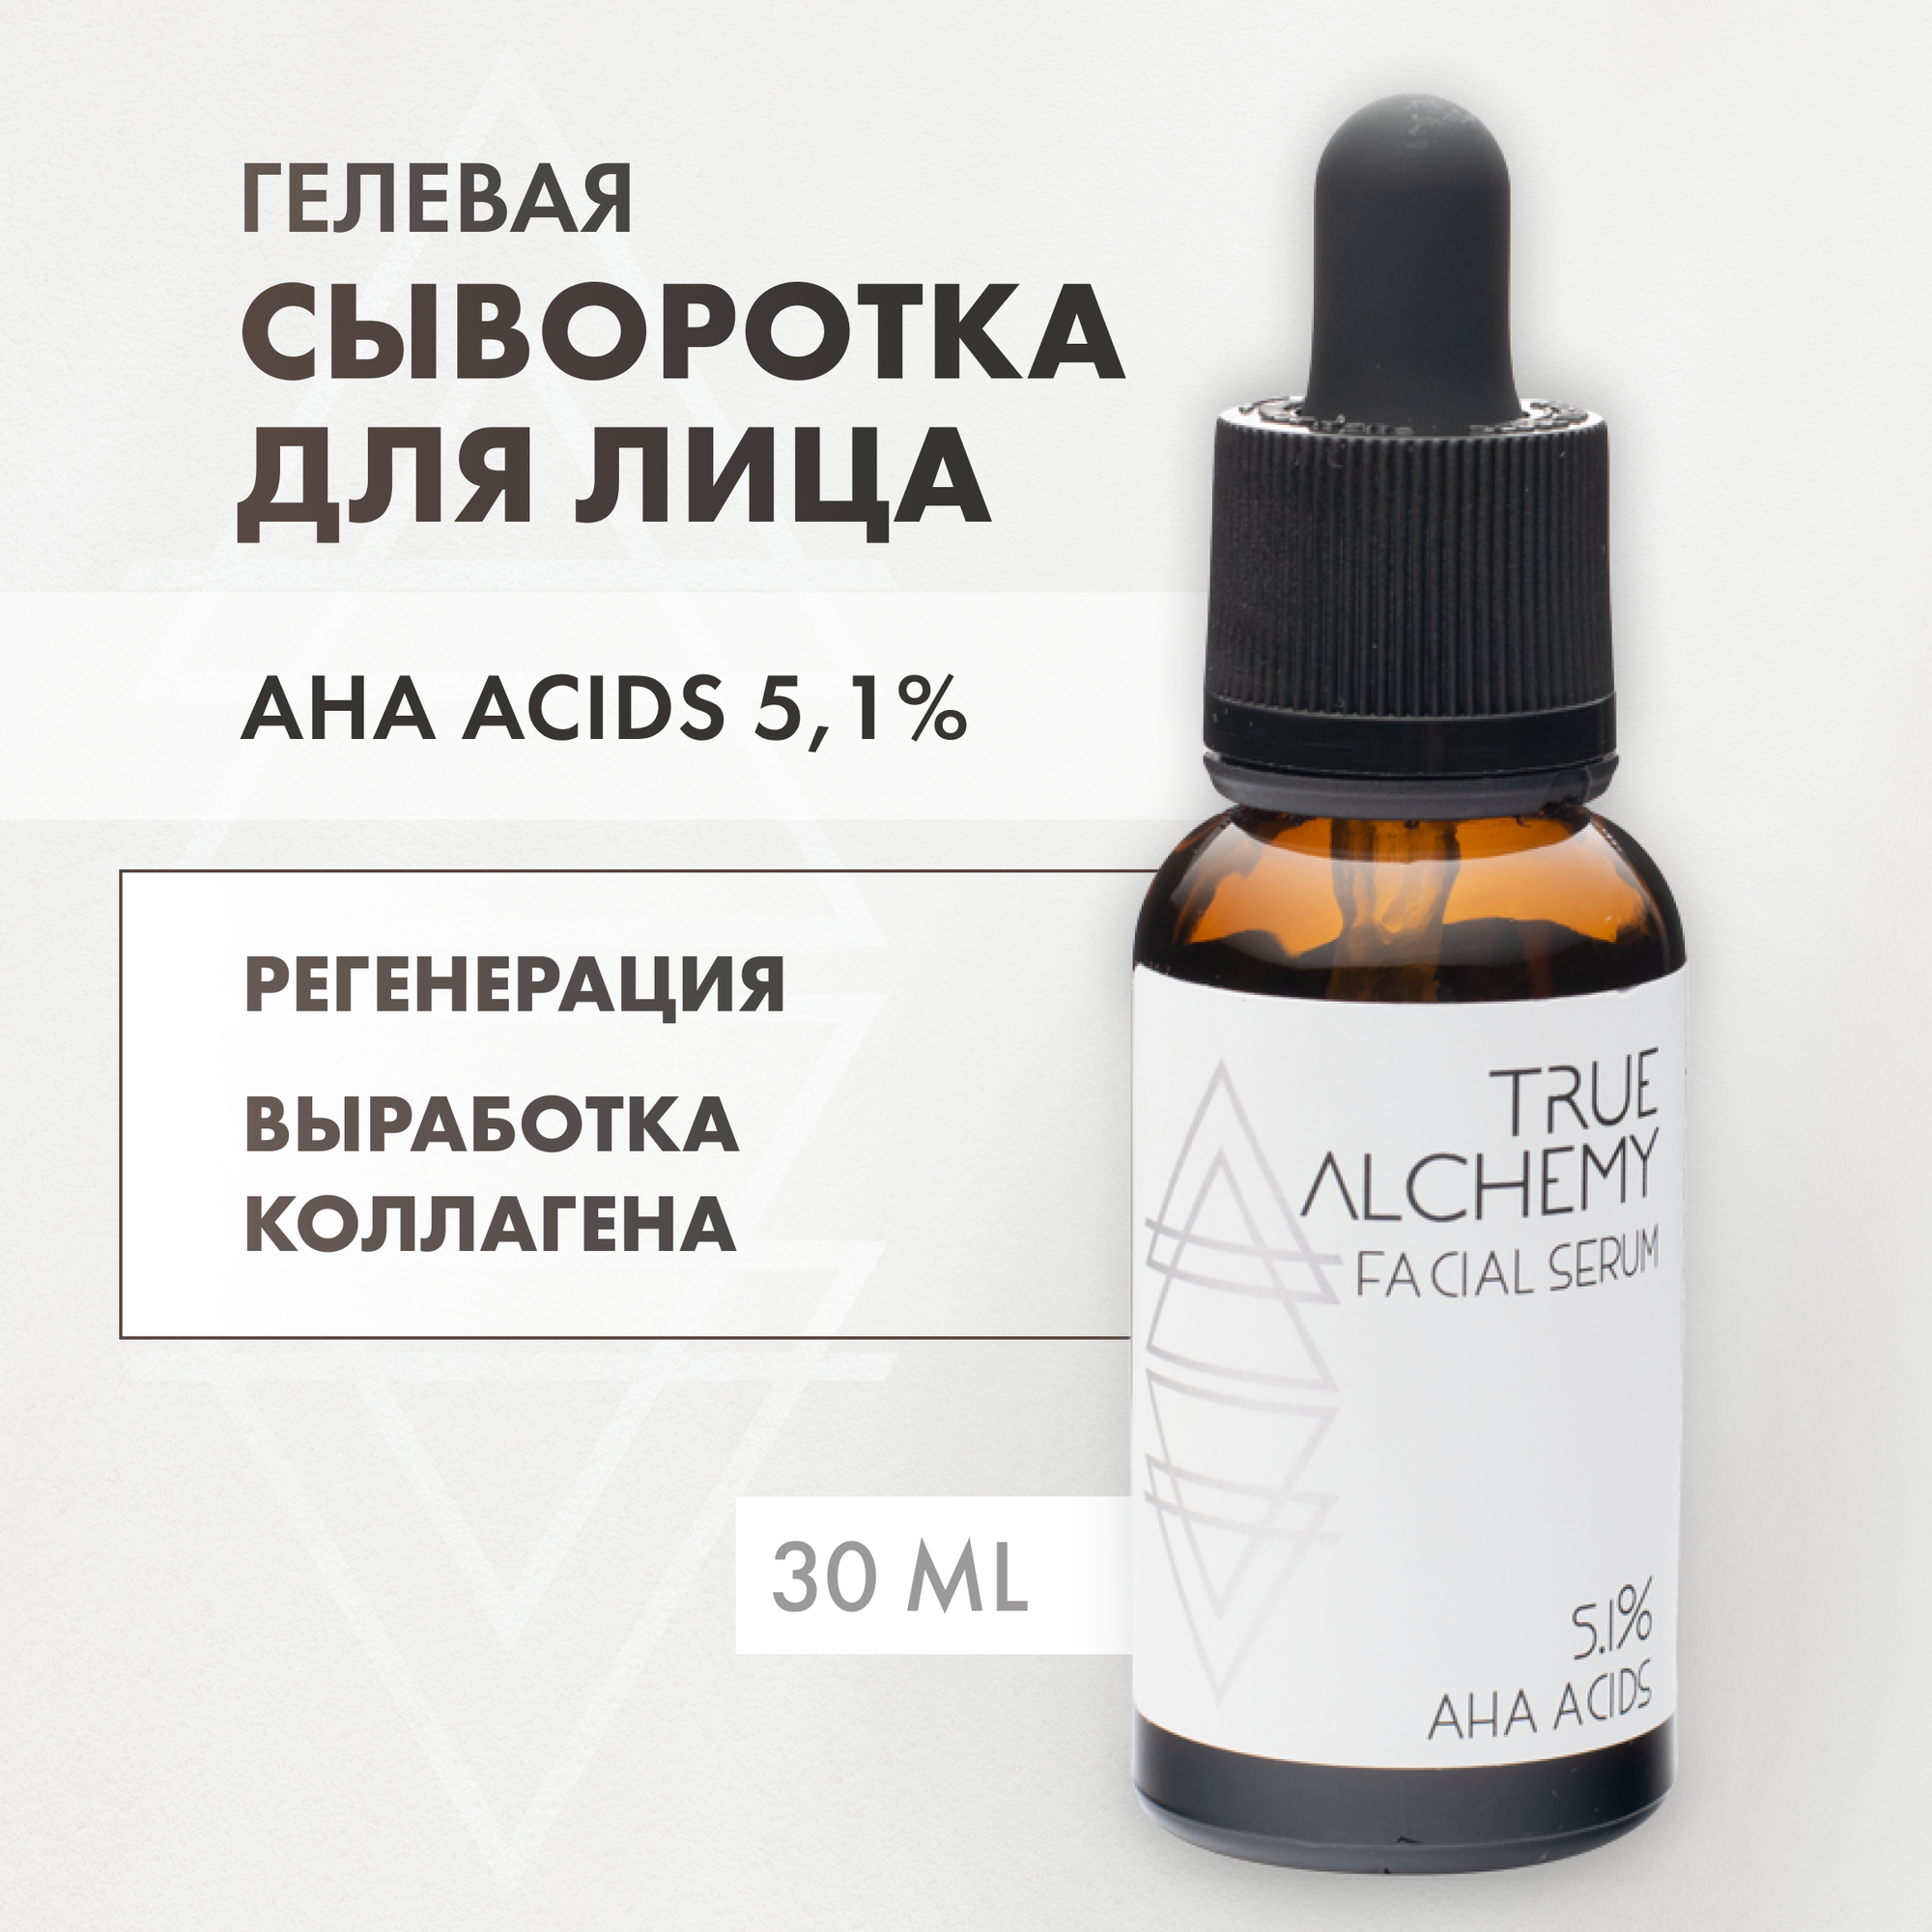 Сыворотка для проблемной кожи True Alchemy AHA Acid 5,1% 30мл